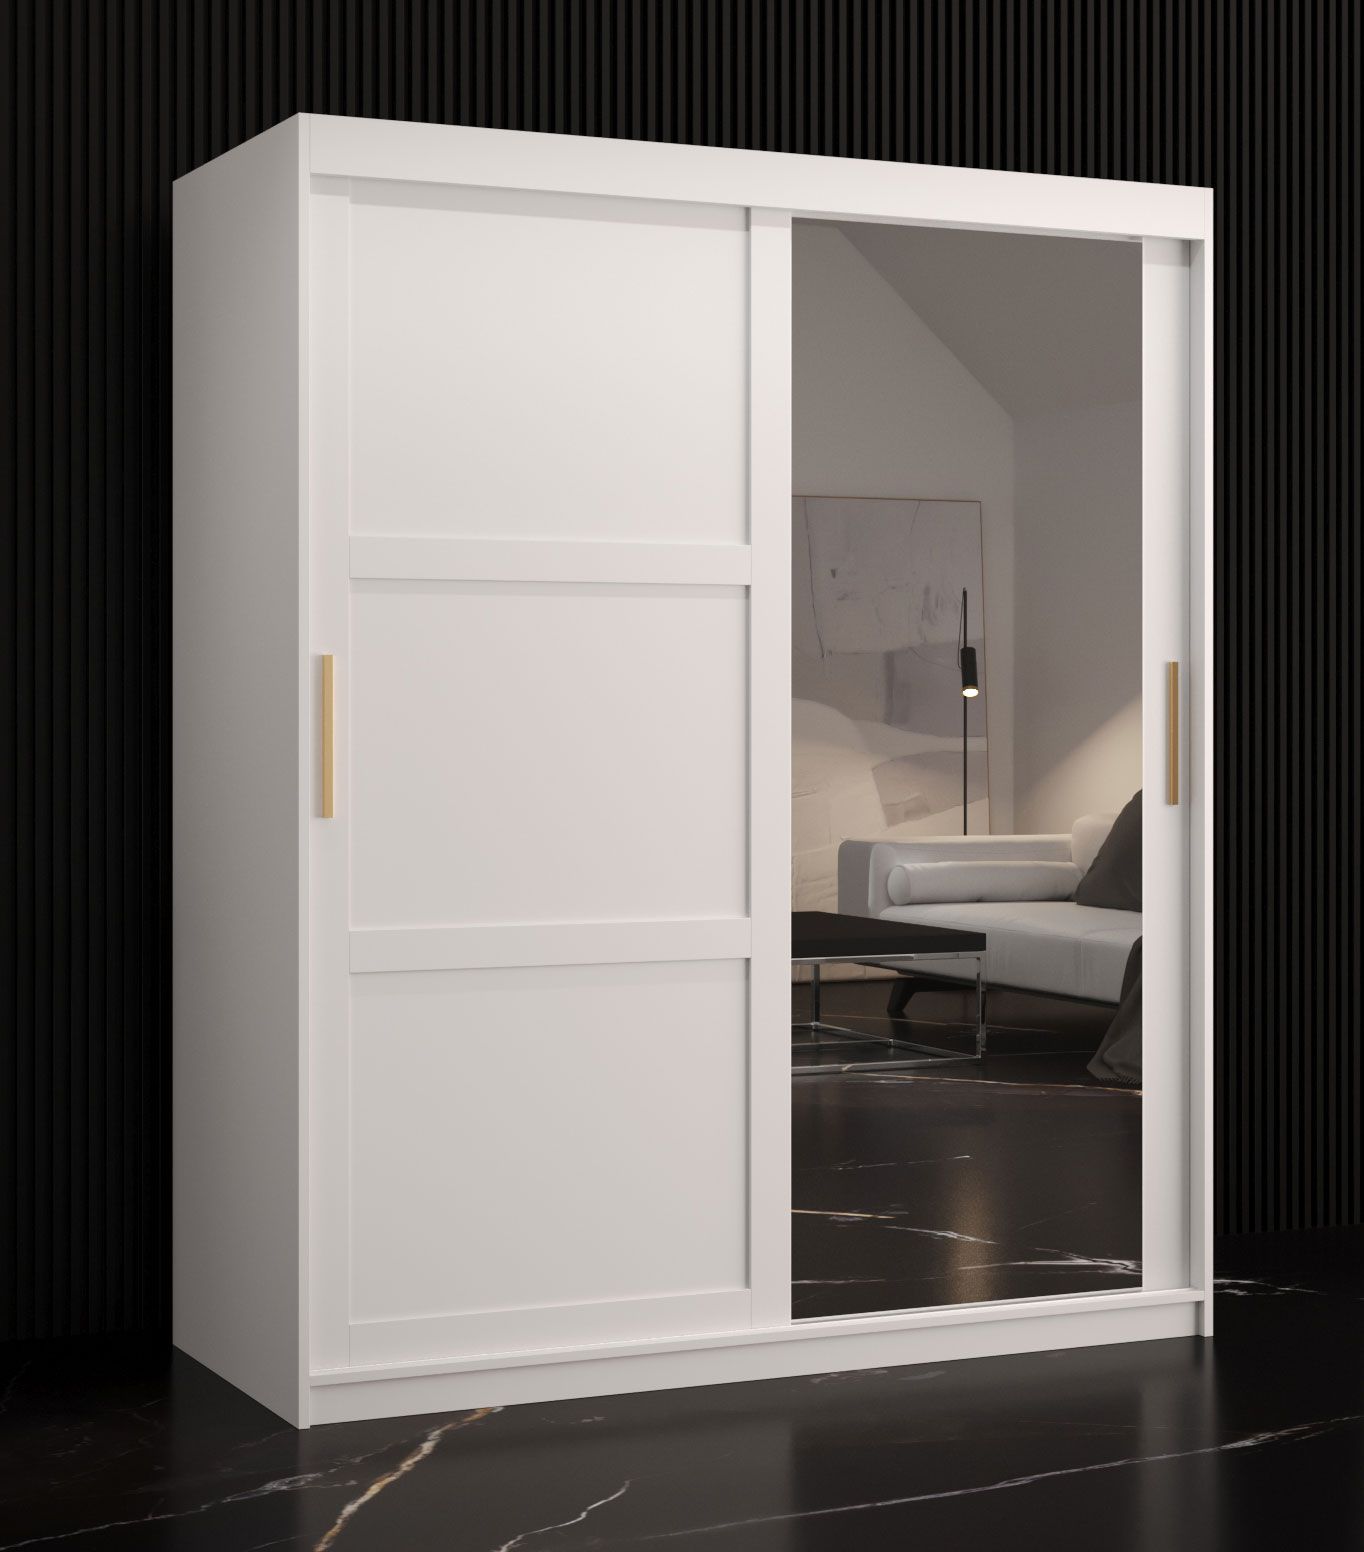 Kledingkast met één deur met spiegel Liskamm 33, kleur: mat wit - afmetingen: 200 x 150 x 62 cm (H x B x D), met vijf vakken en twee kledingstangen